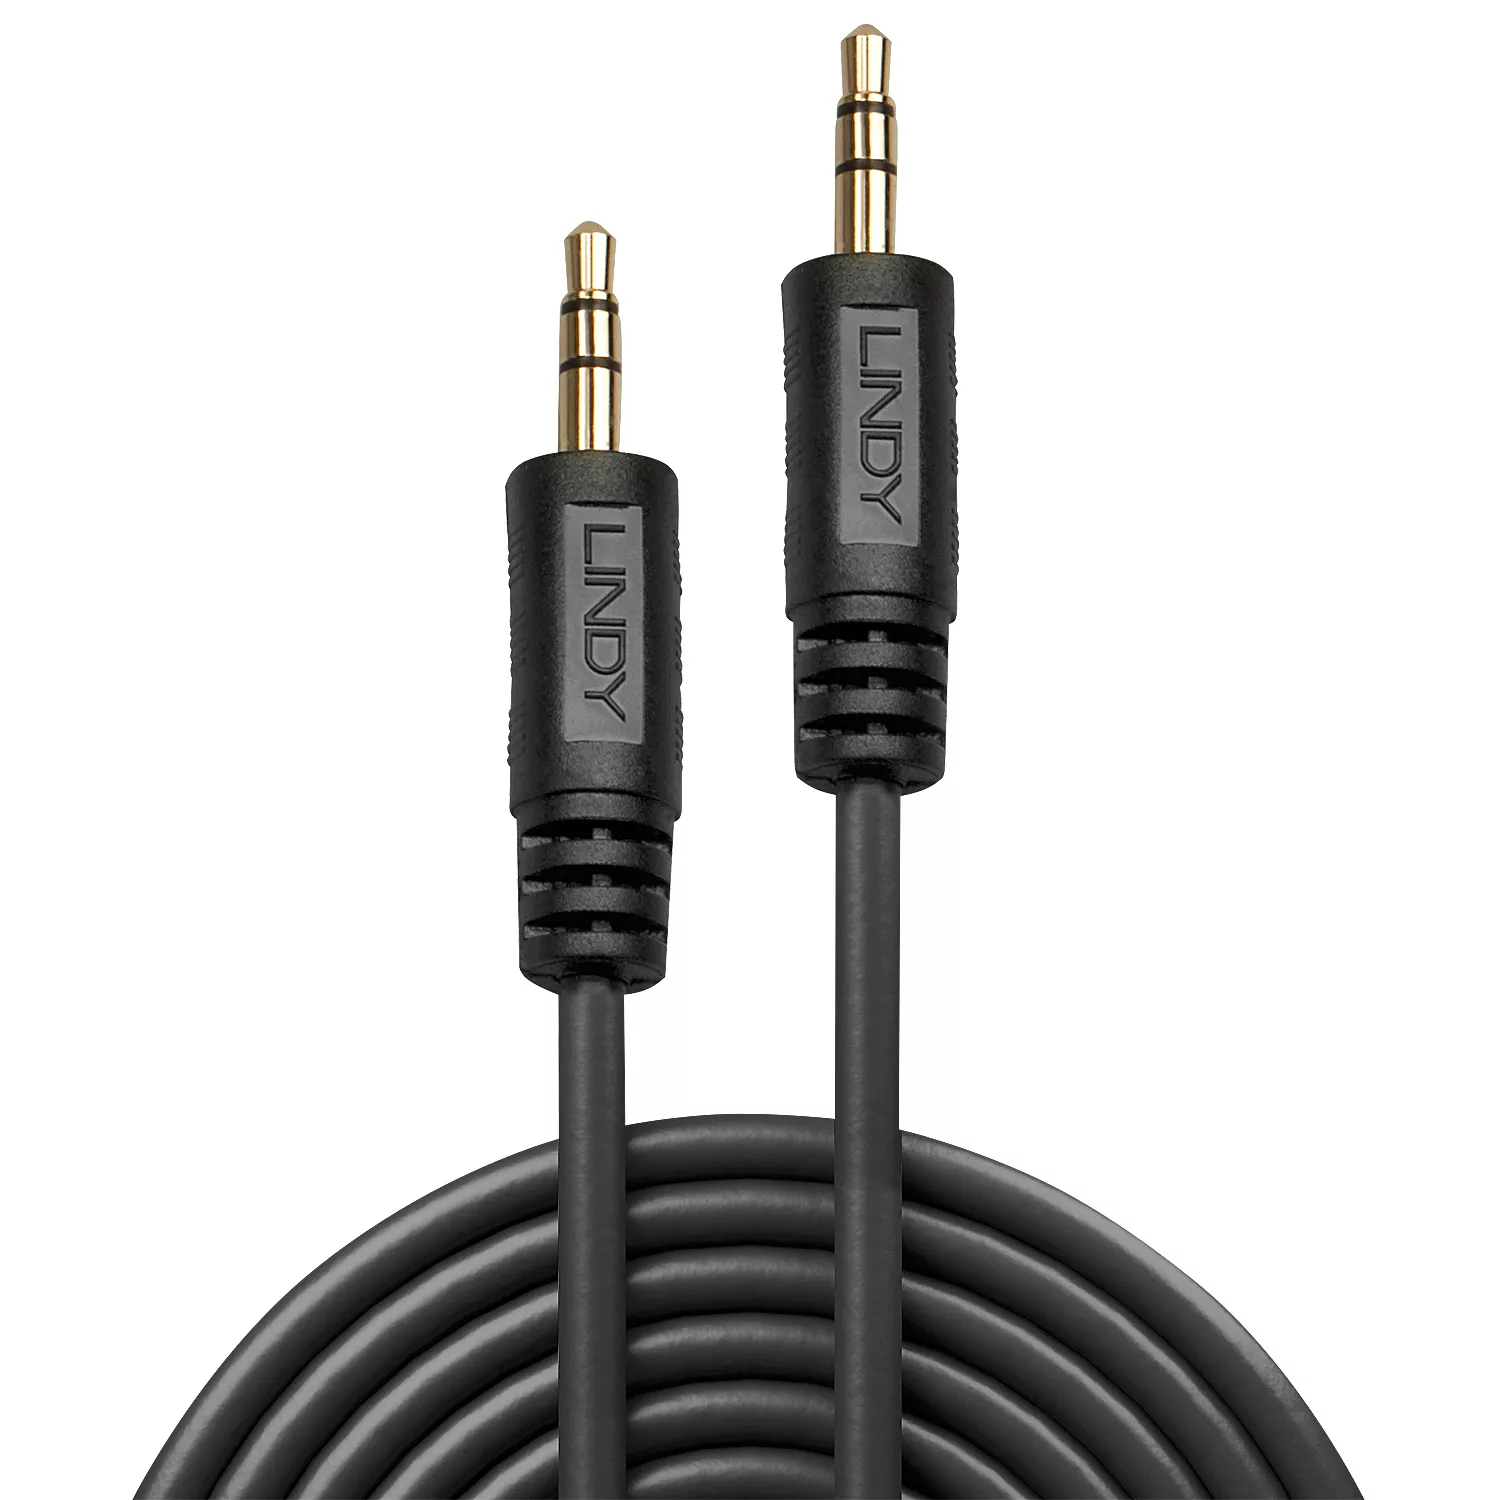 Vente LINDY Premium Audio Cable 3m with 3.5mm Stereo Lindy au meilleur prix - visuel 2